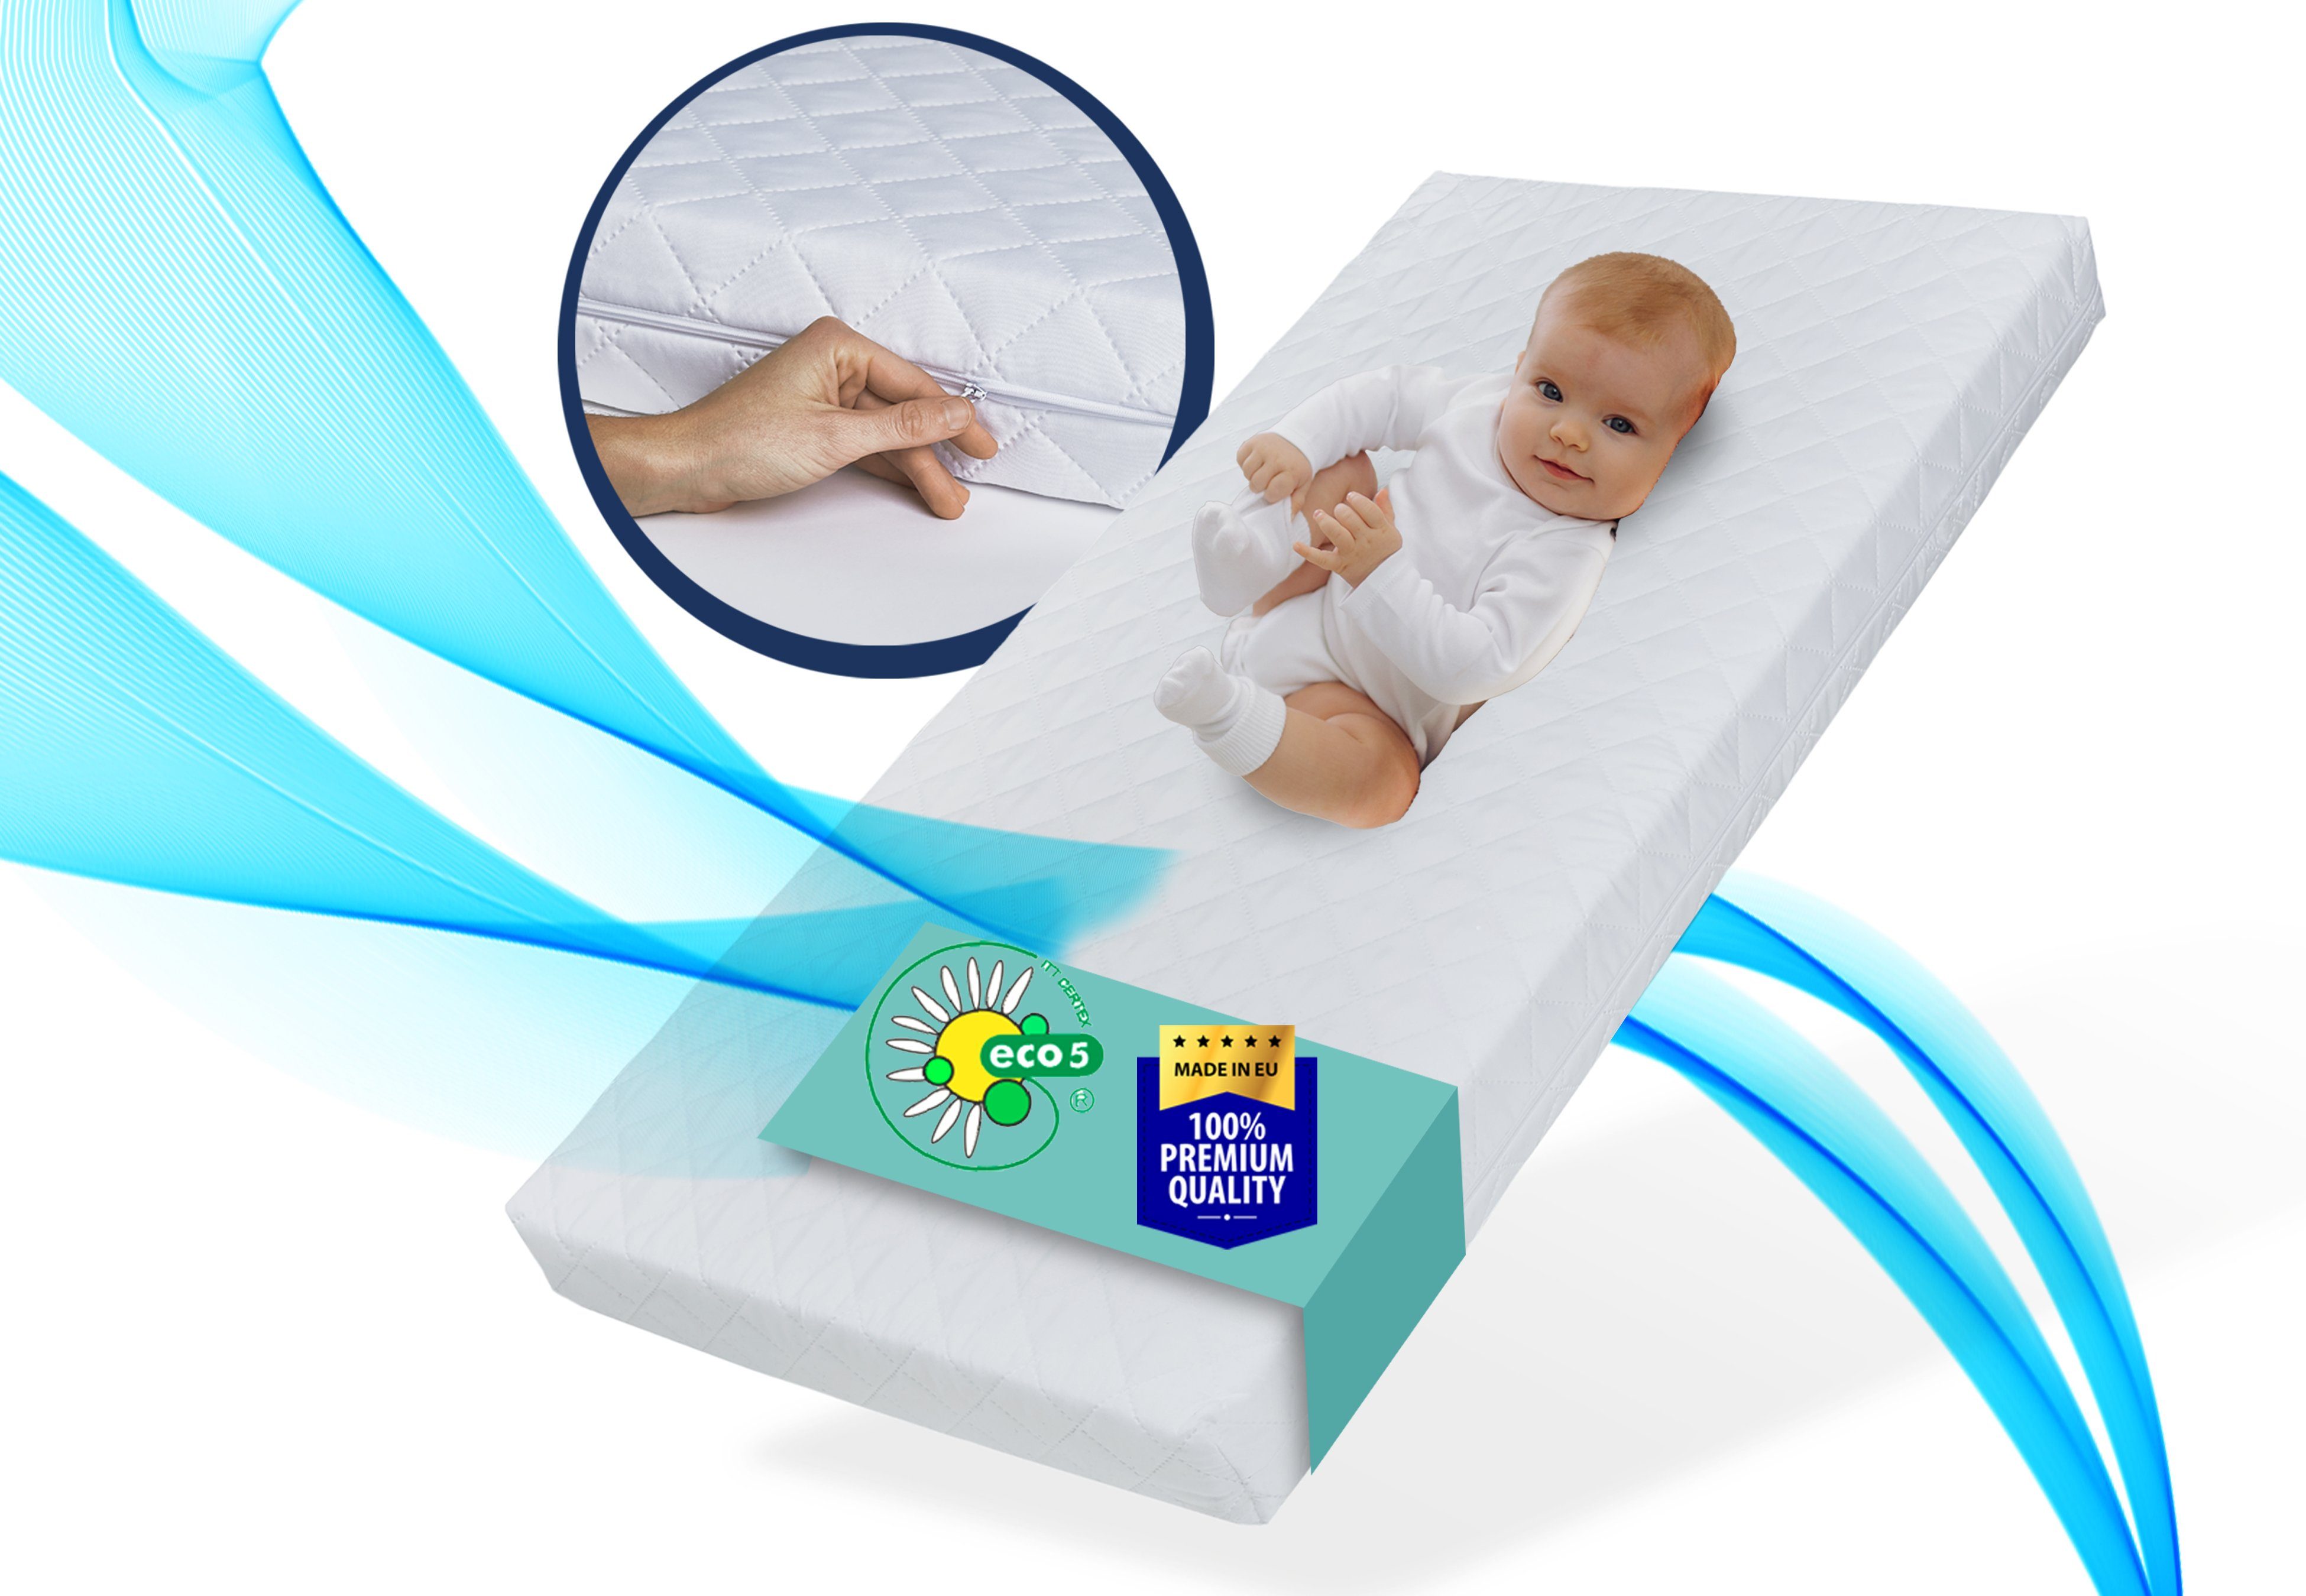 Kindermatratze SMART, Babymatratze mit abnehmbarem Bezug, waschbar bei 60°C, Kids Collective, 6 cm hoch, für Babybett oder Gitterbett, 140x70 cm, 6cm hoch, eco5 zertifiziert